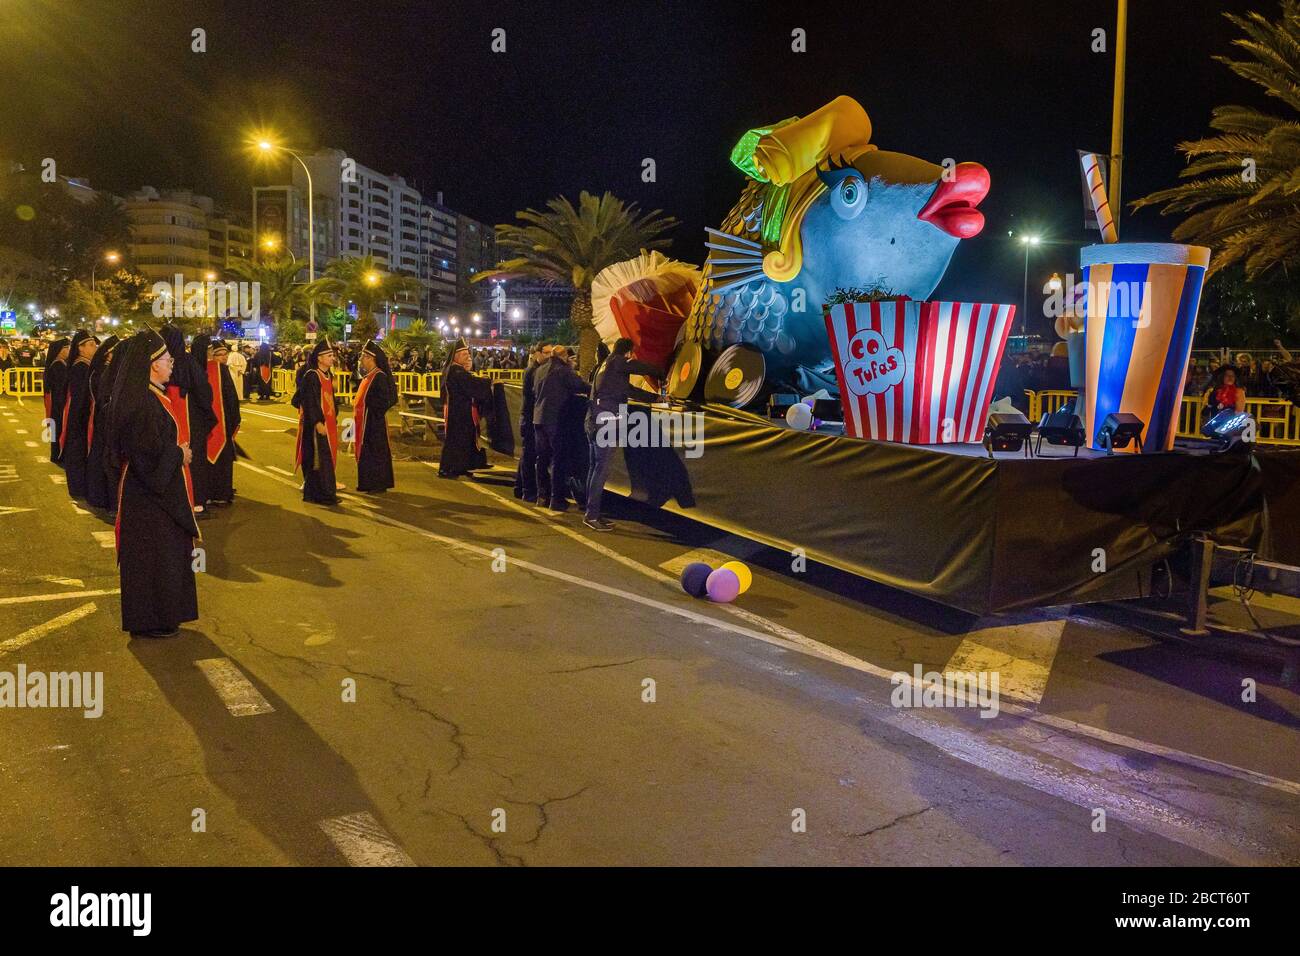 Una grande statua colorata di un pesce, l'attrazione principale della processione funebre sepoltura delle Sardine, ha raggiunto il luogo per l'ultima combustione Foto Stock